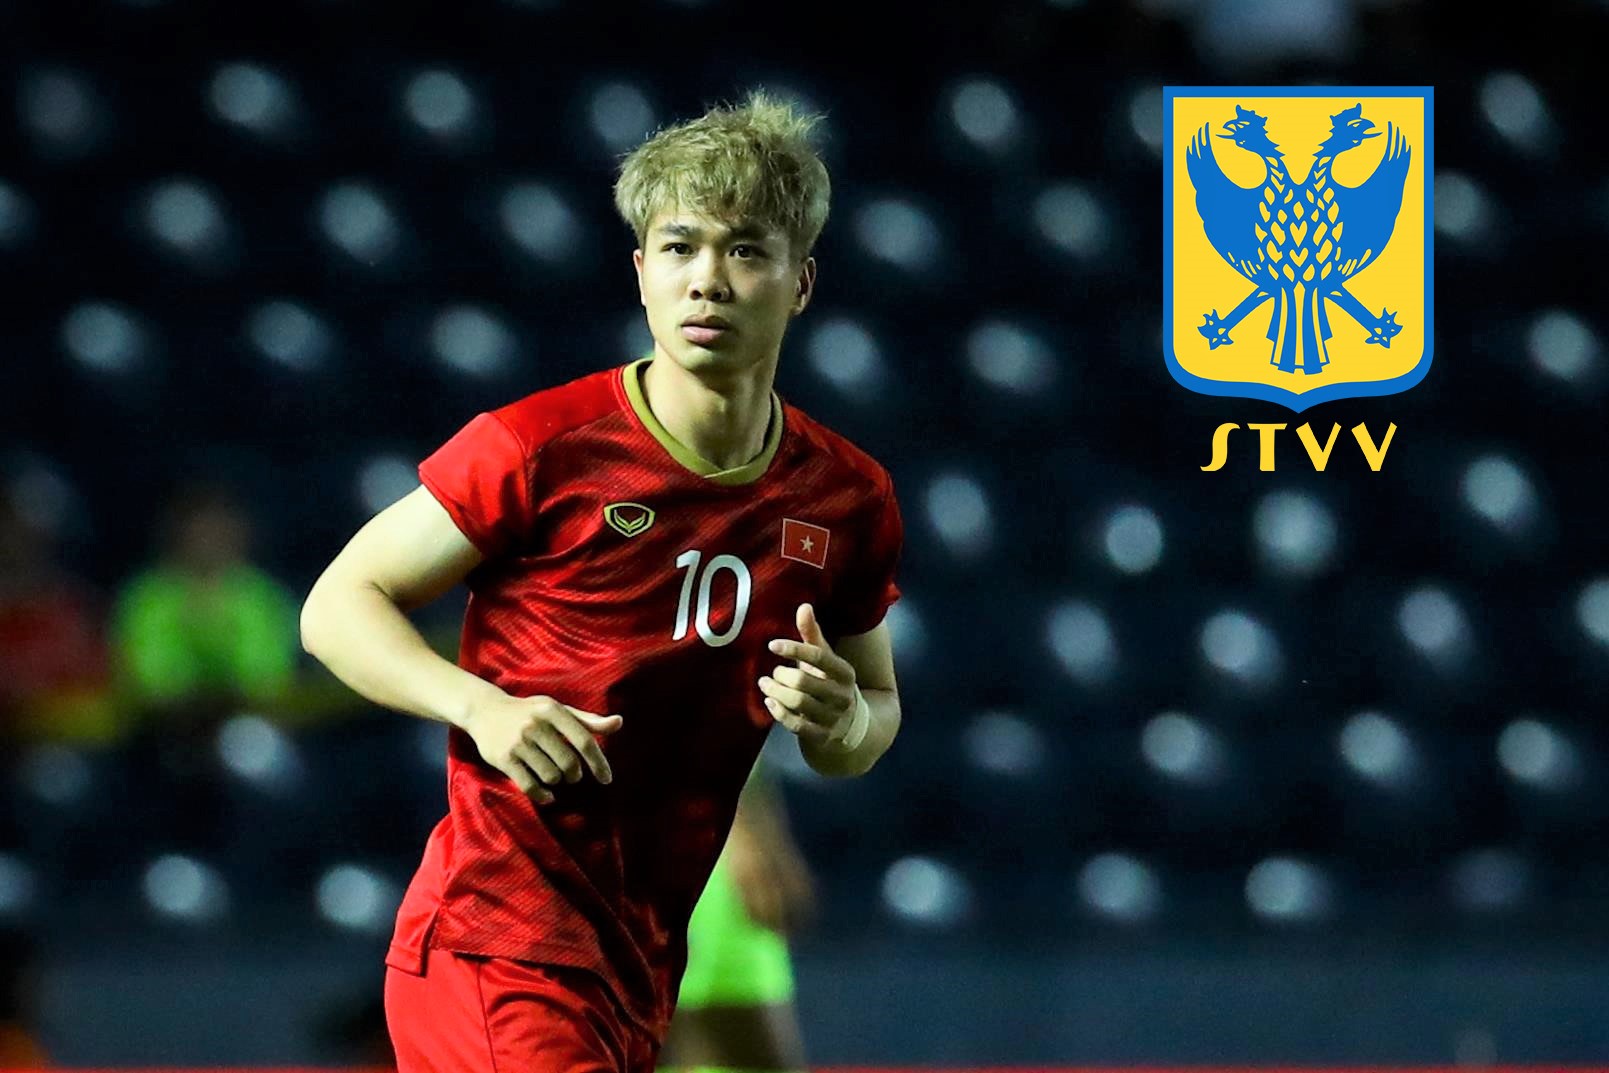 Lịch thi đấu Công Phượng tại giải VĐQG Bỉ: Sint Truidense VV vs Royal Excel đá vòng 1